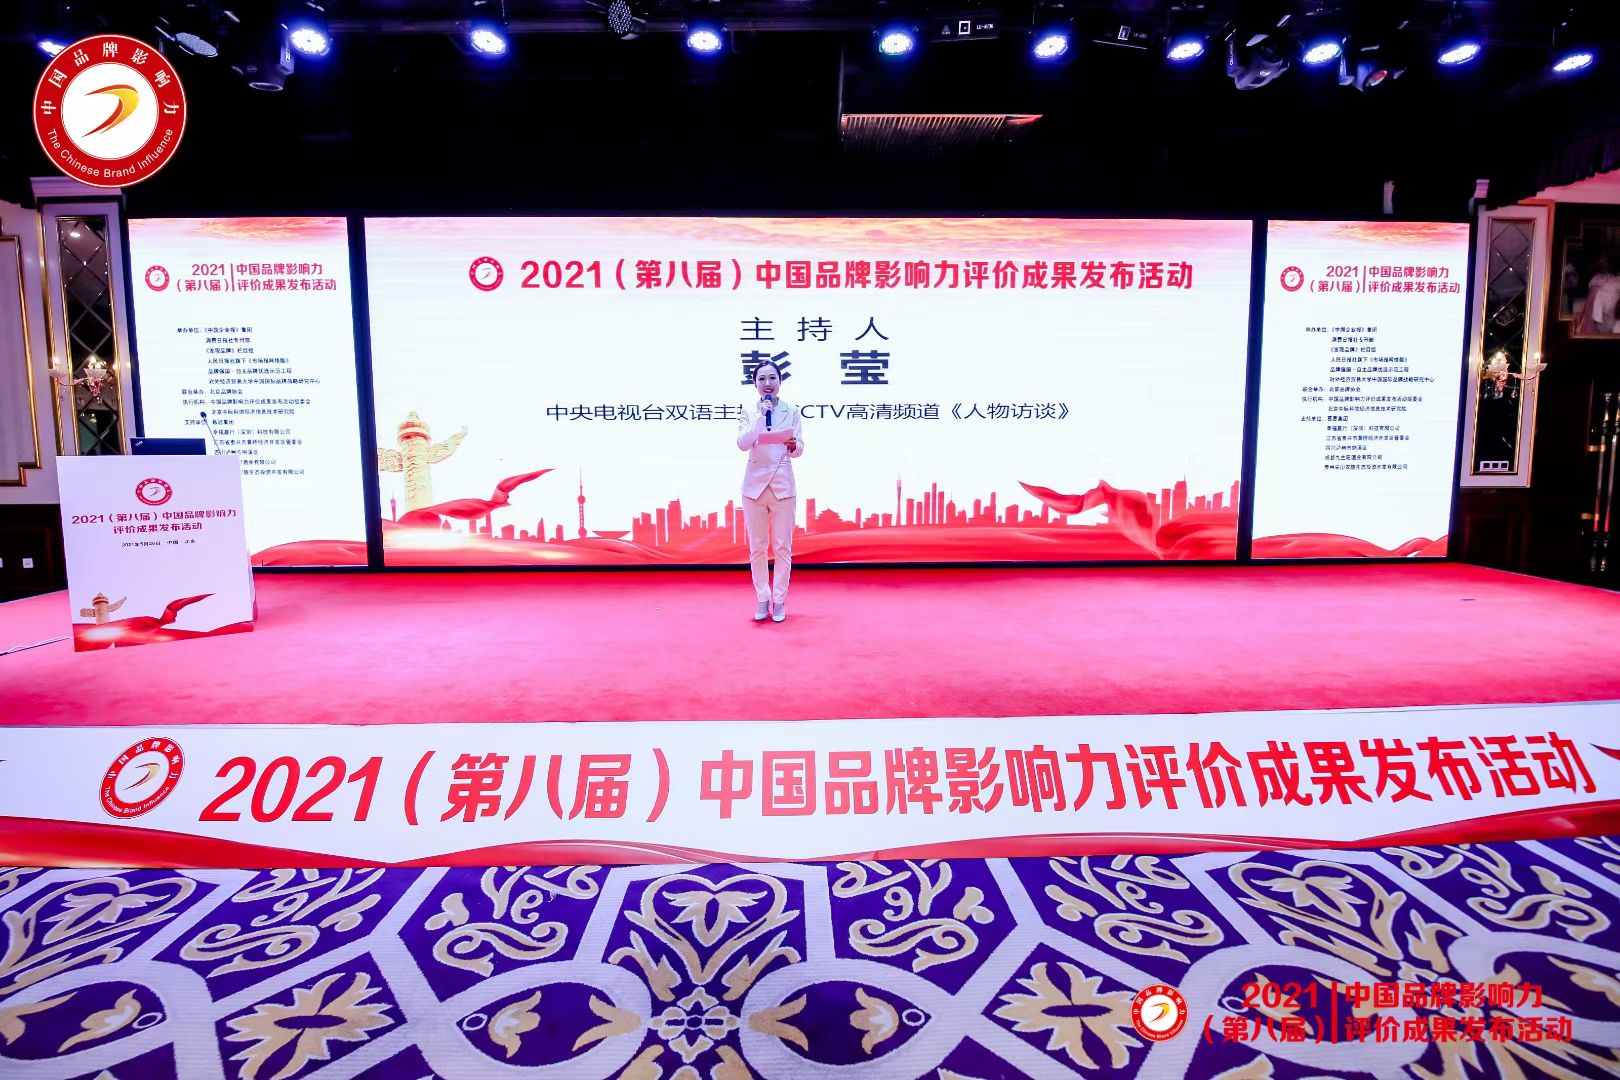 2021第八届中国品牌影响力评价成果发布活动圆满结束,河北家作生物科技有限公司荣获三项品牌荣誉